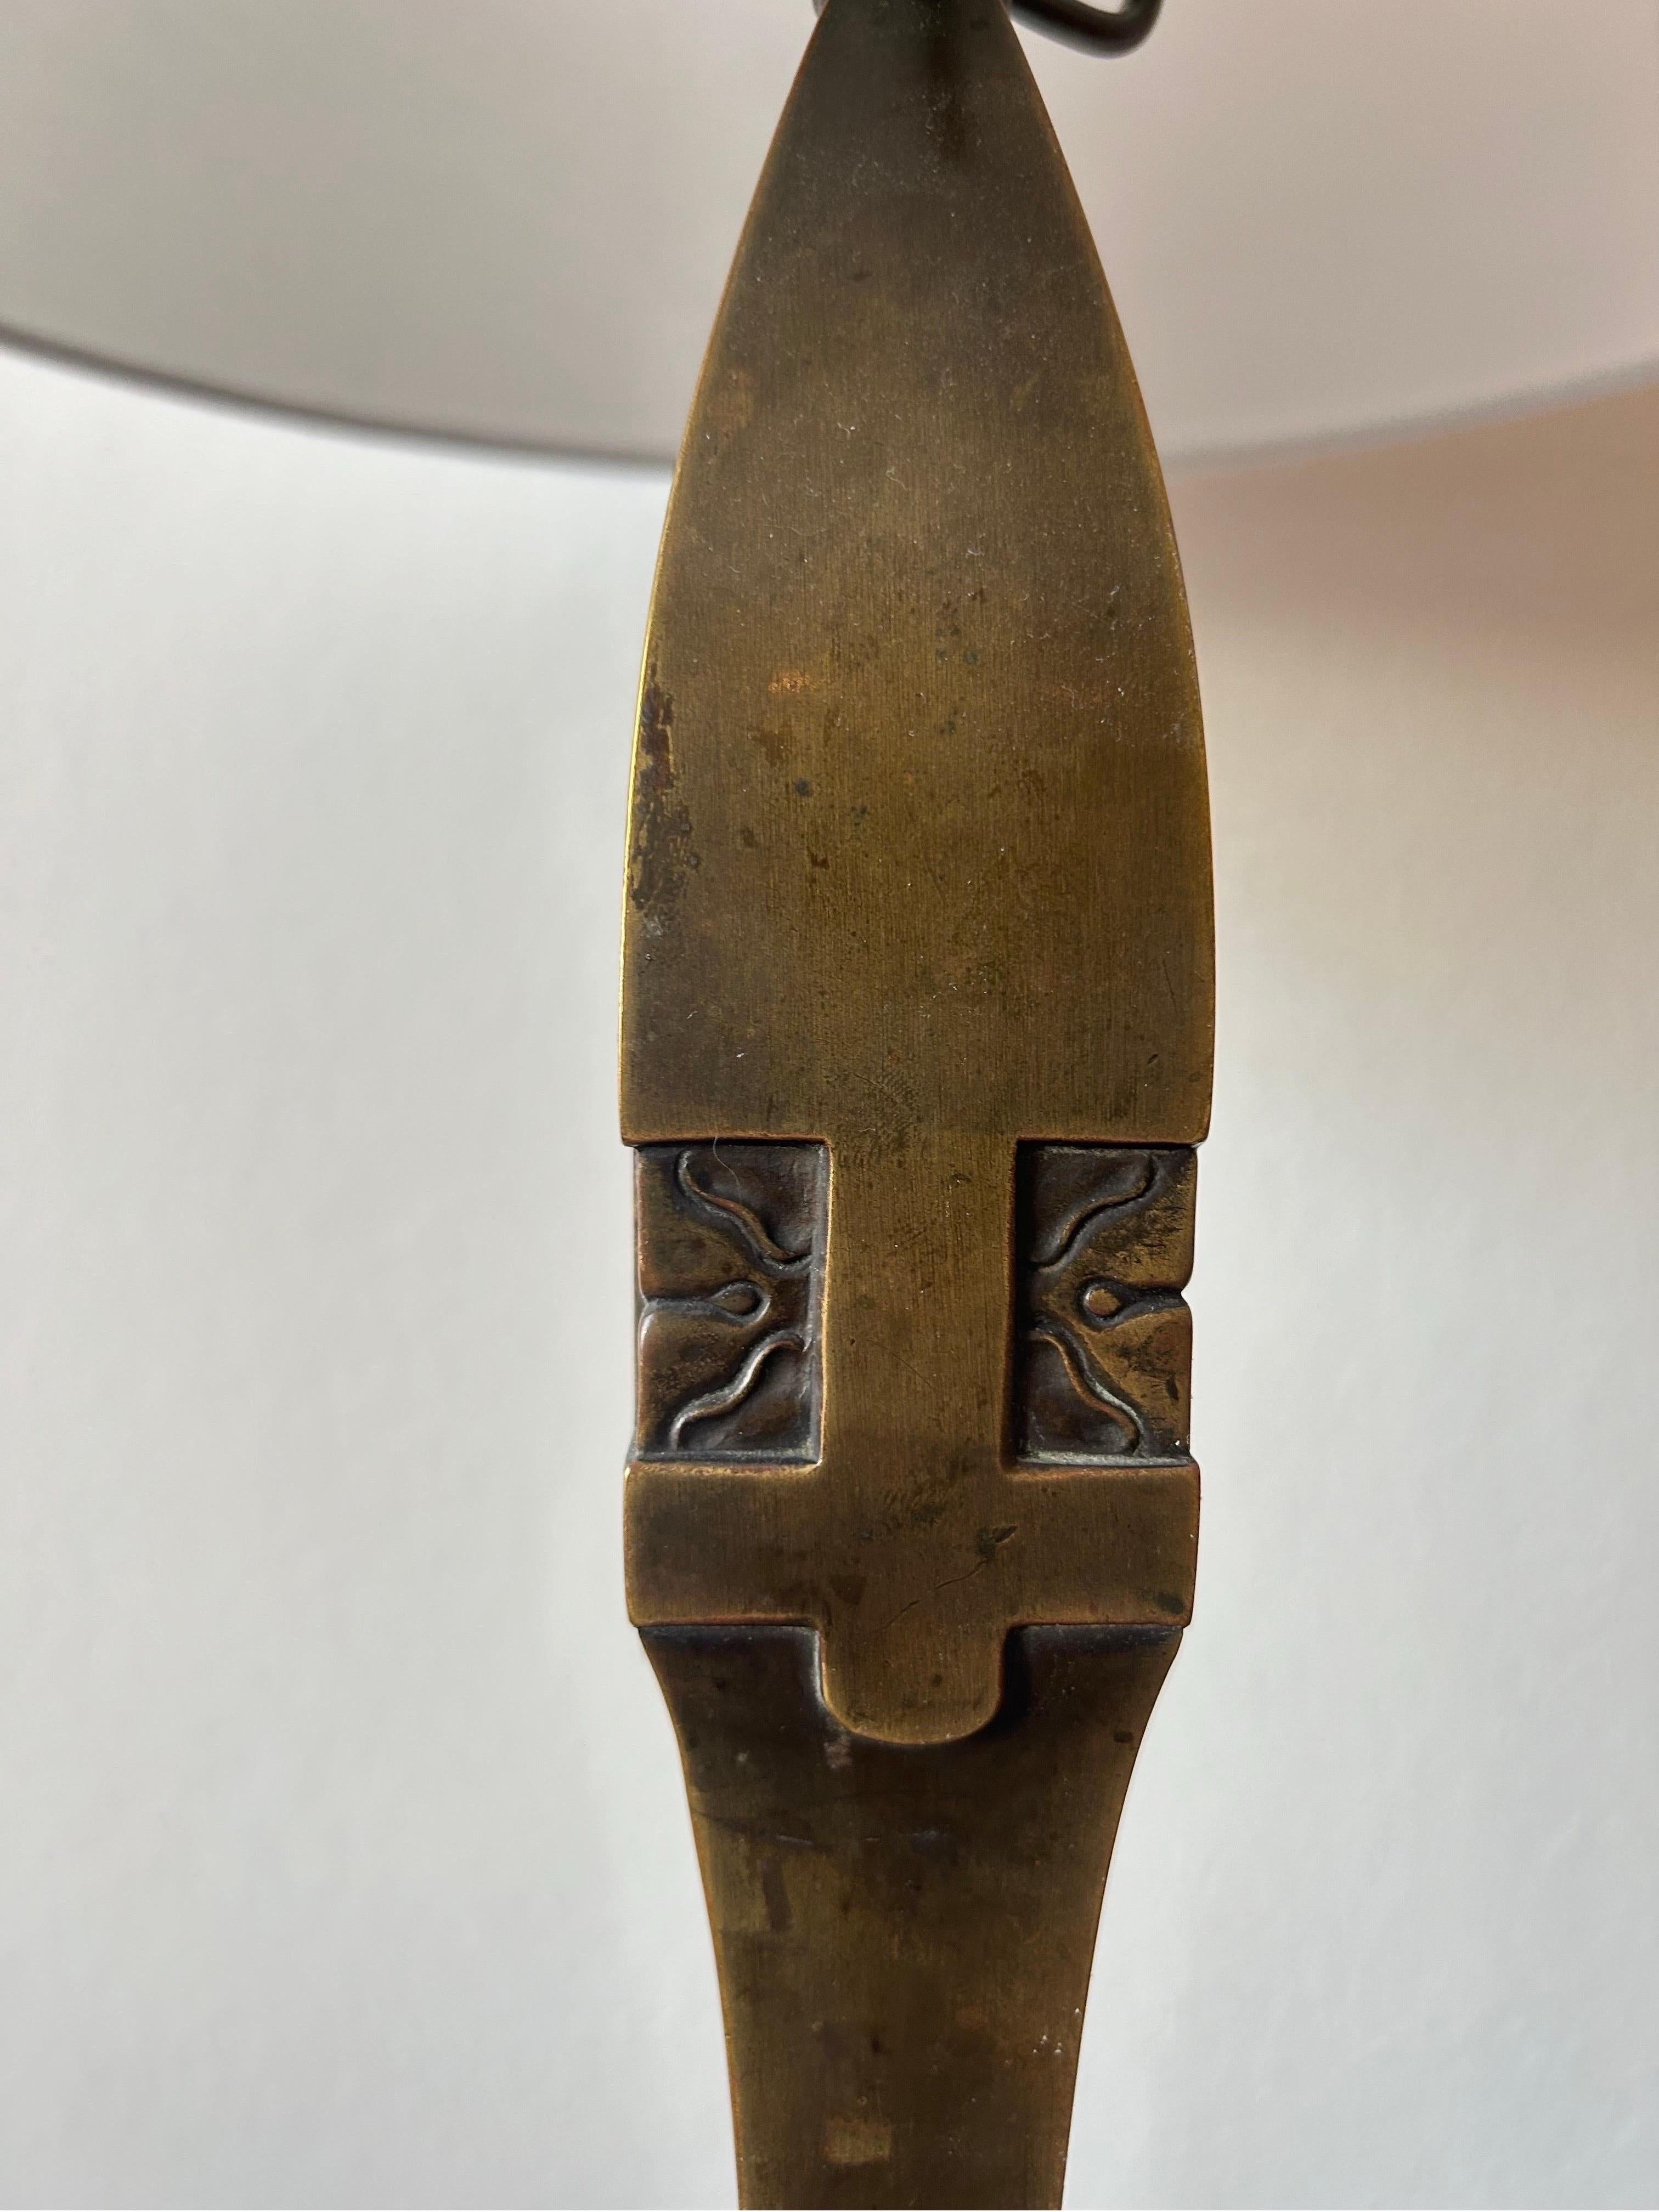 Danish Thorvald Bindesbøll Bronze Table Lamp for Tvermoes & Abrahamsen, Denmark 1900’s For Sale